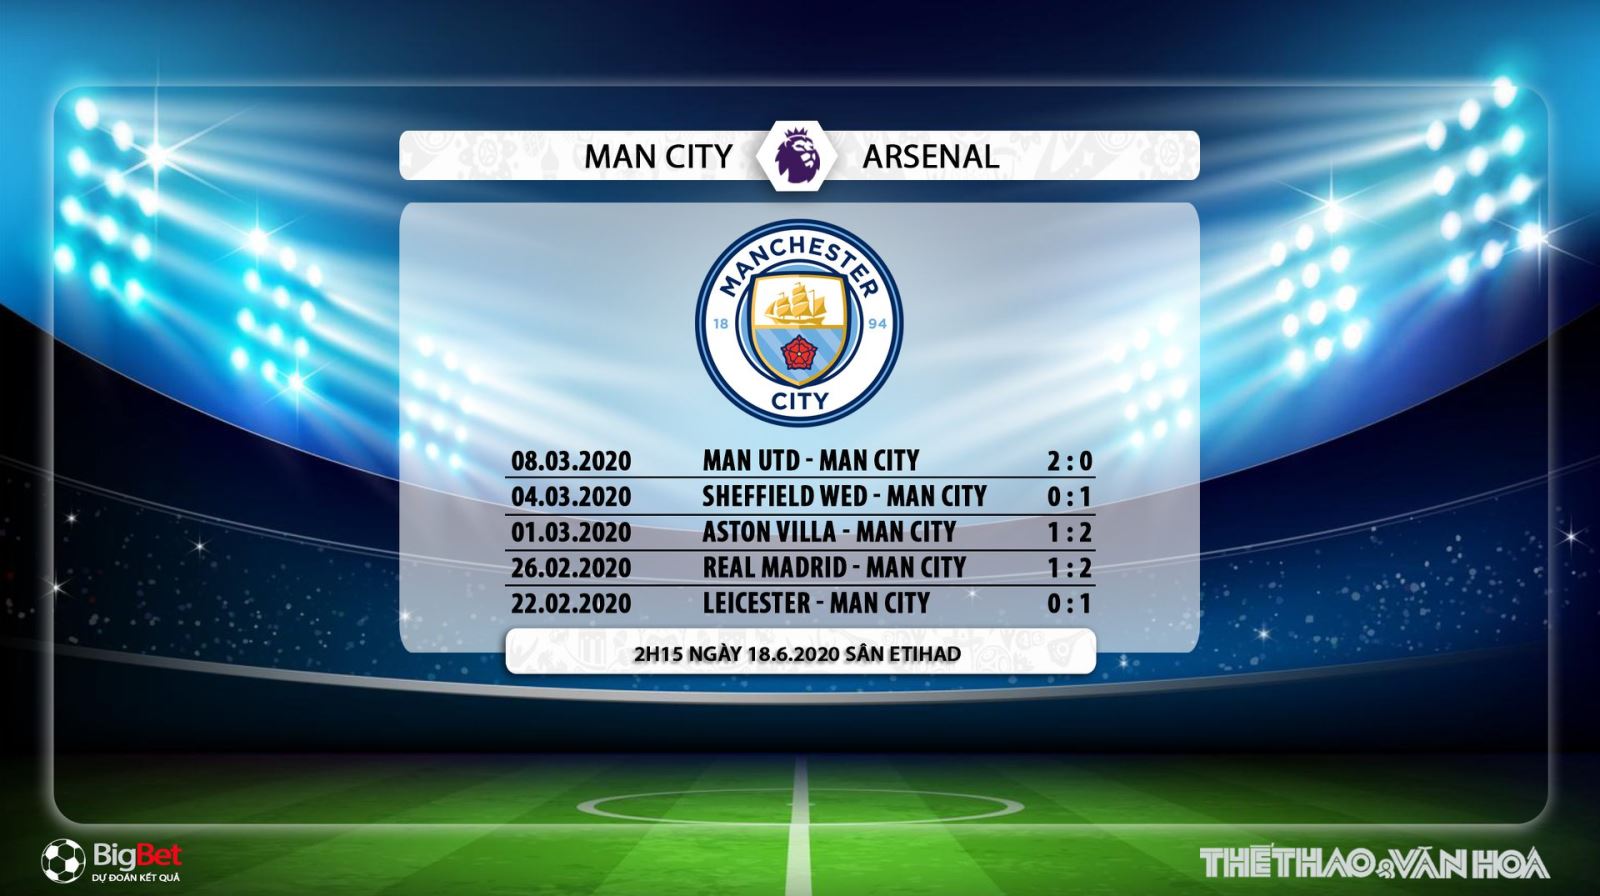 Man City vs Arsenal, Man City, Arsenal, soi kèo, kèo bóng đá, nhận định, trực tiếp bóng đá, bong da, lịch thi đấu